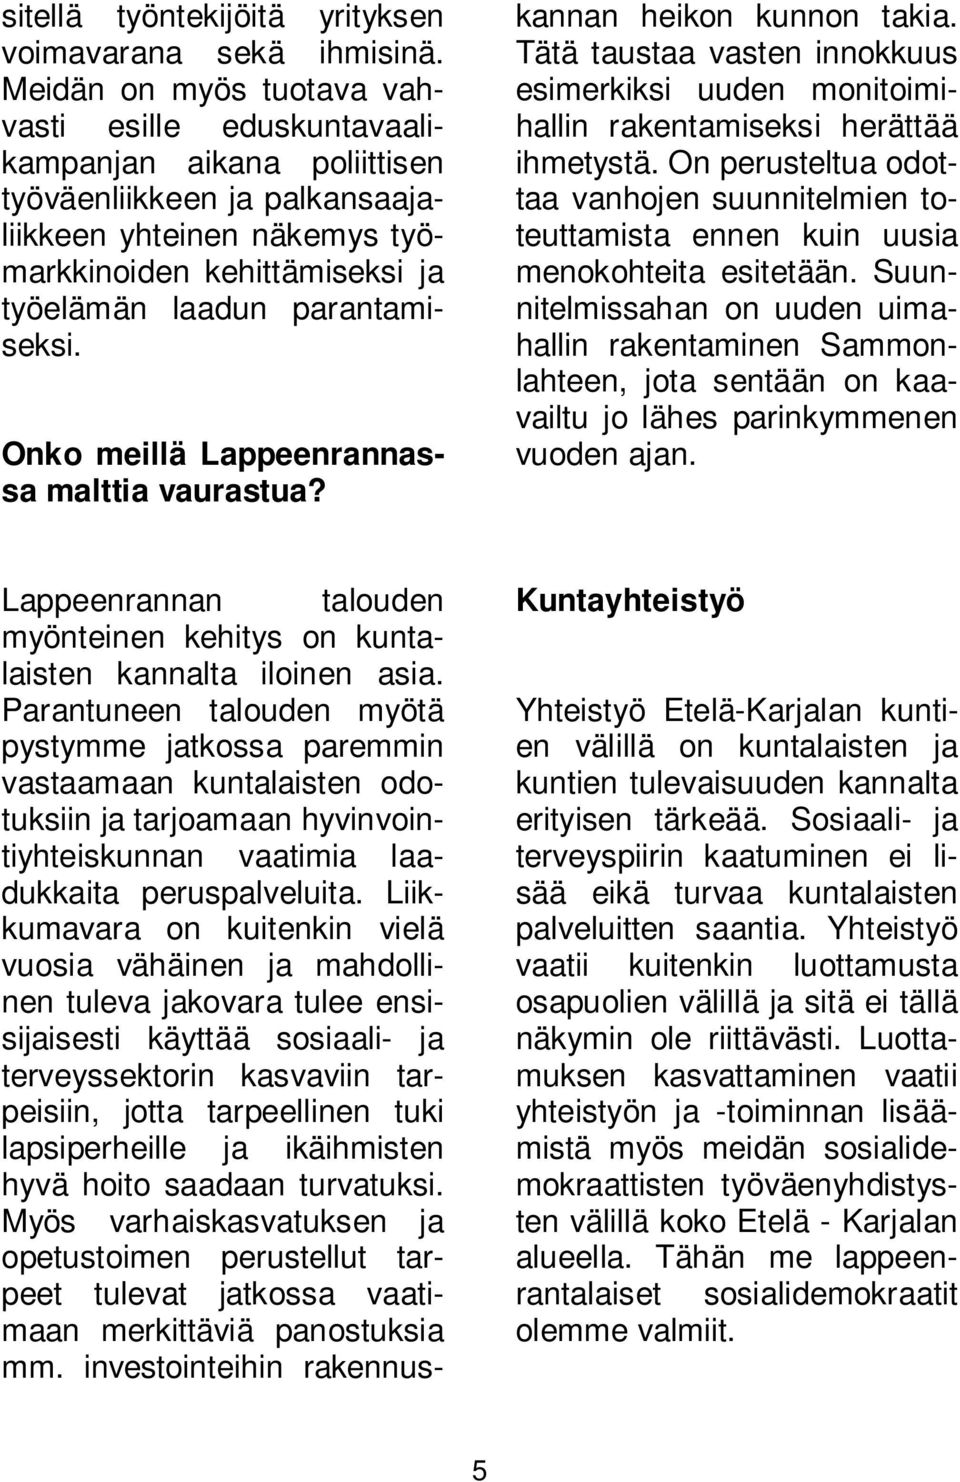 parantamiseksi. Onko meillä Lappeenrannassa malttia vaurastua? Lappeenrannan talouden myönteinen kehitys on kuntalaisten kannalta iloinen asia.